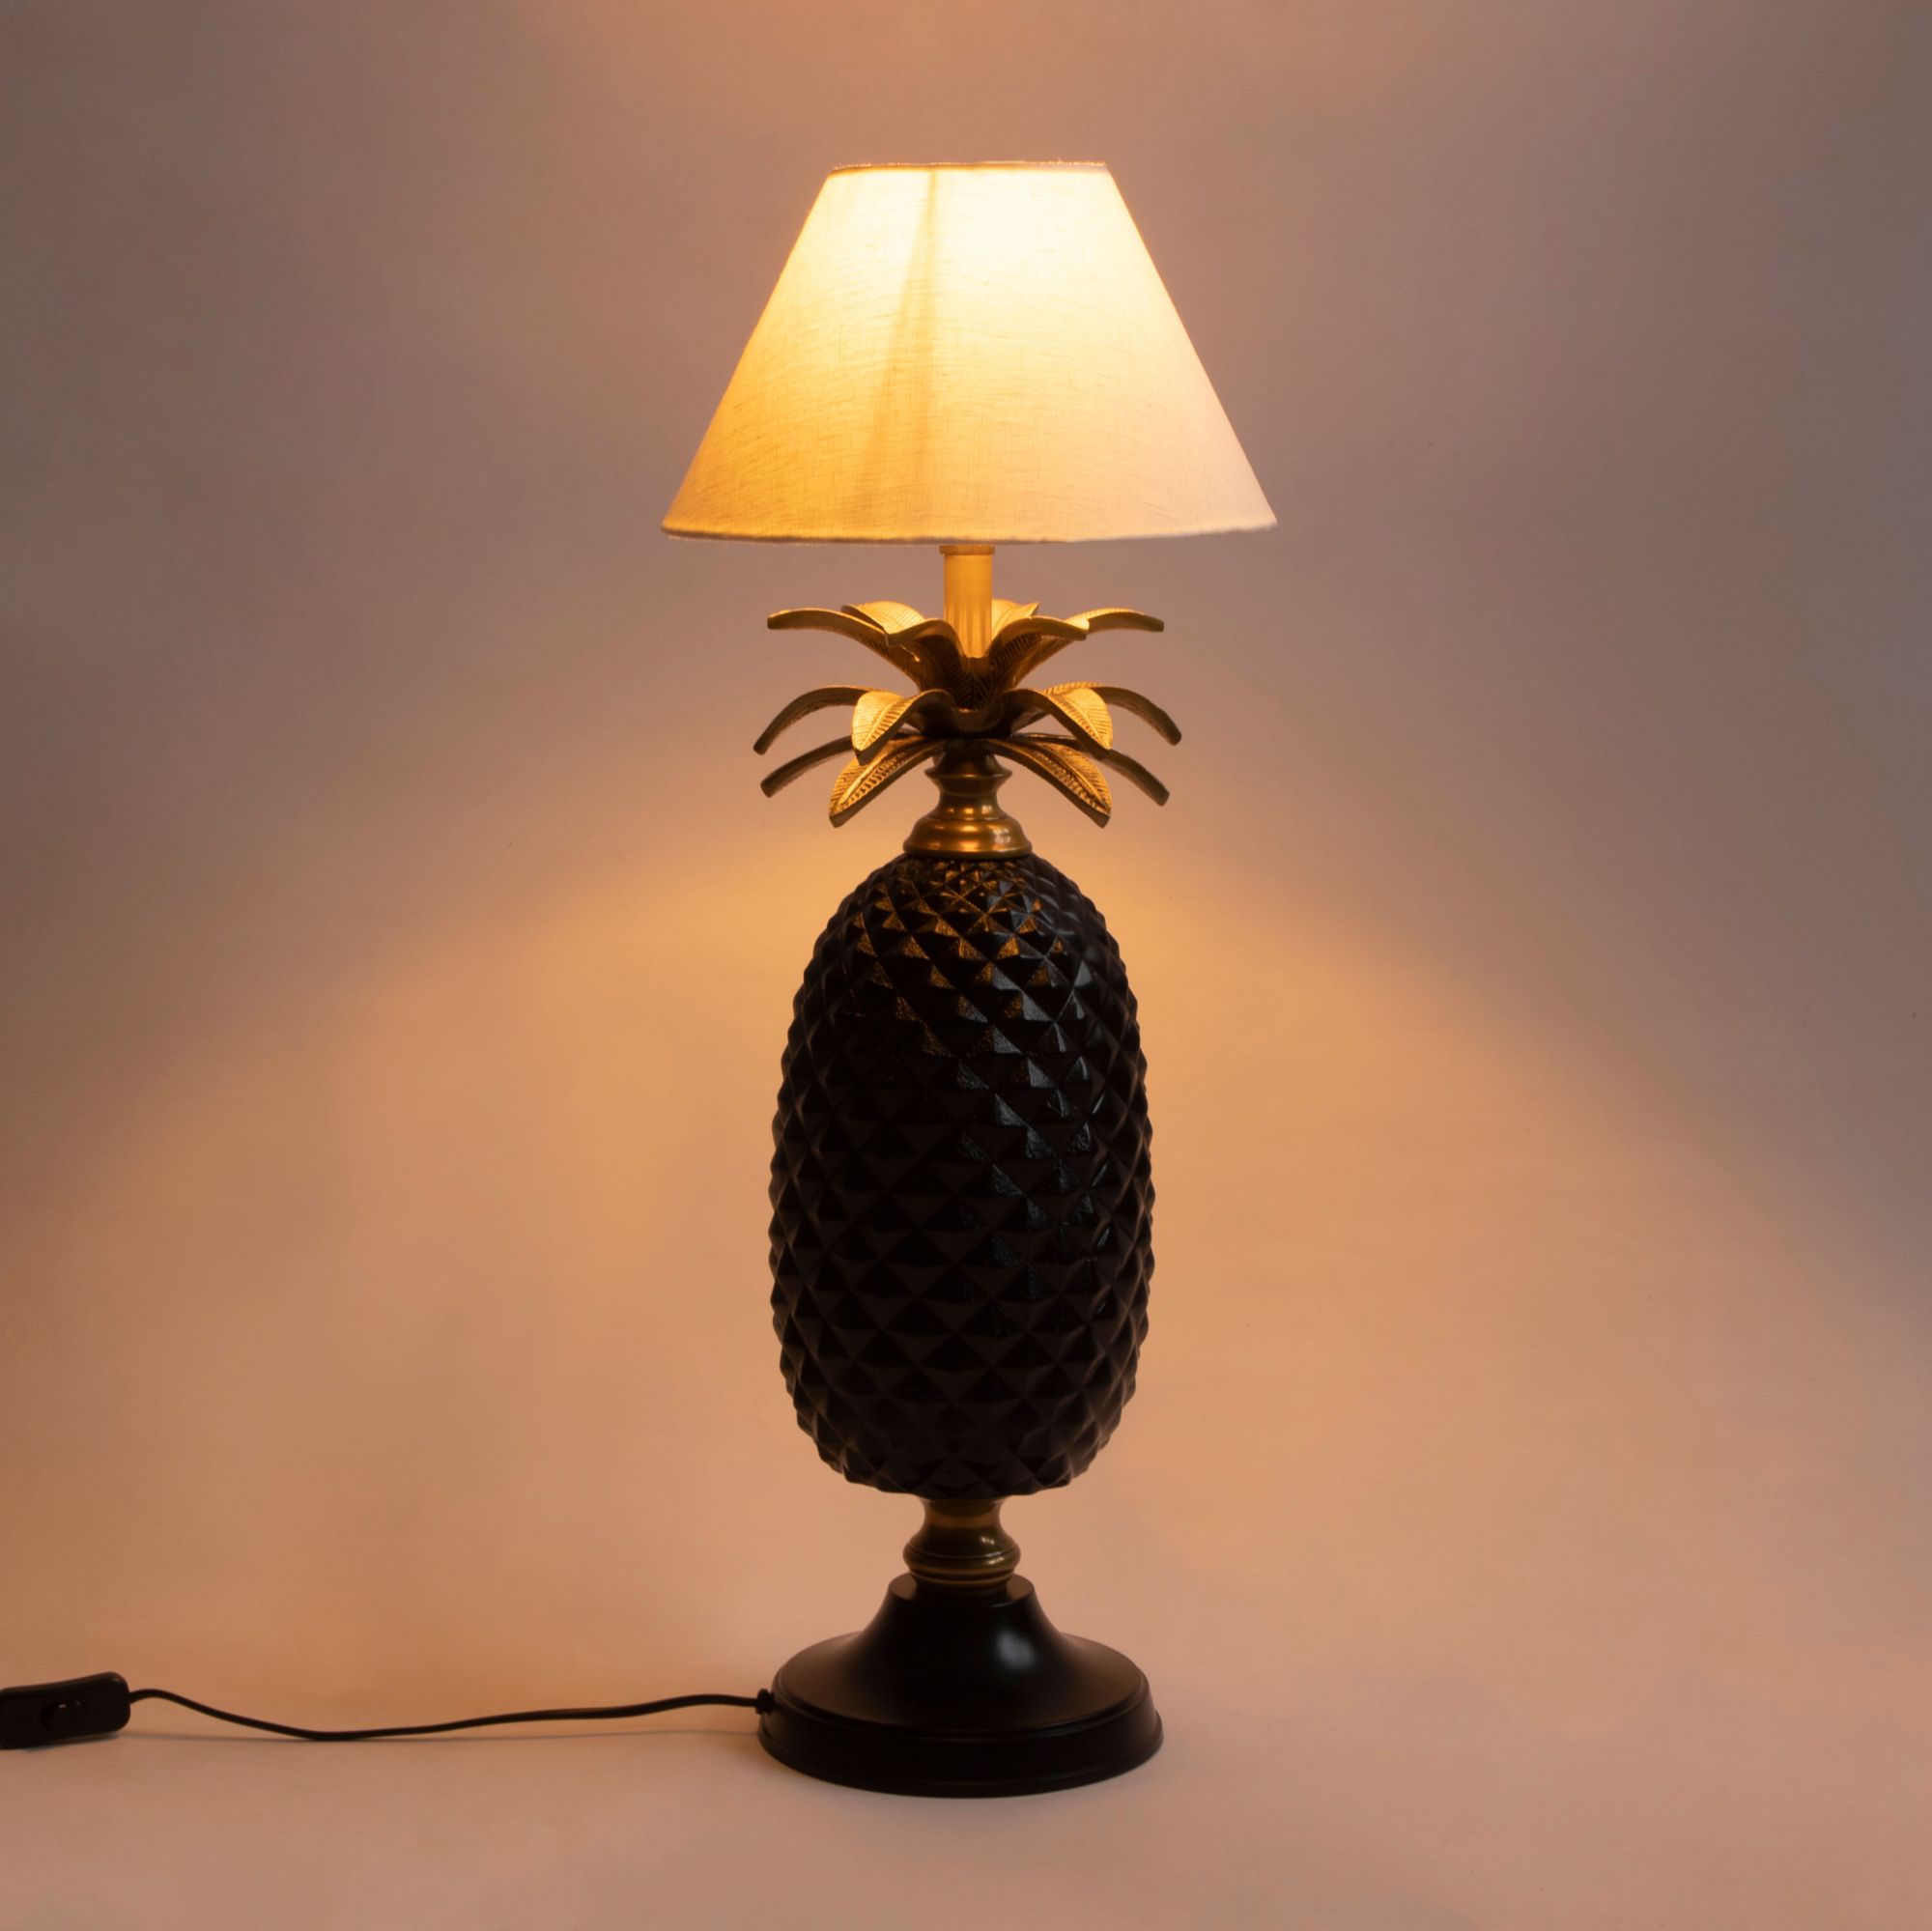 Ananas Large Lamp Stand - Ebony